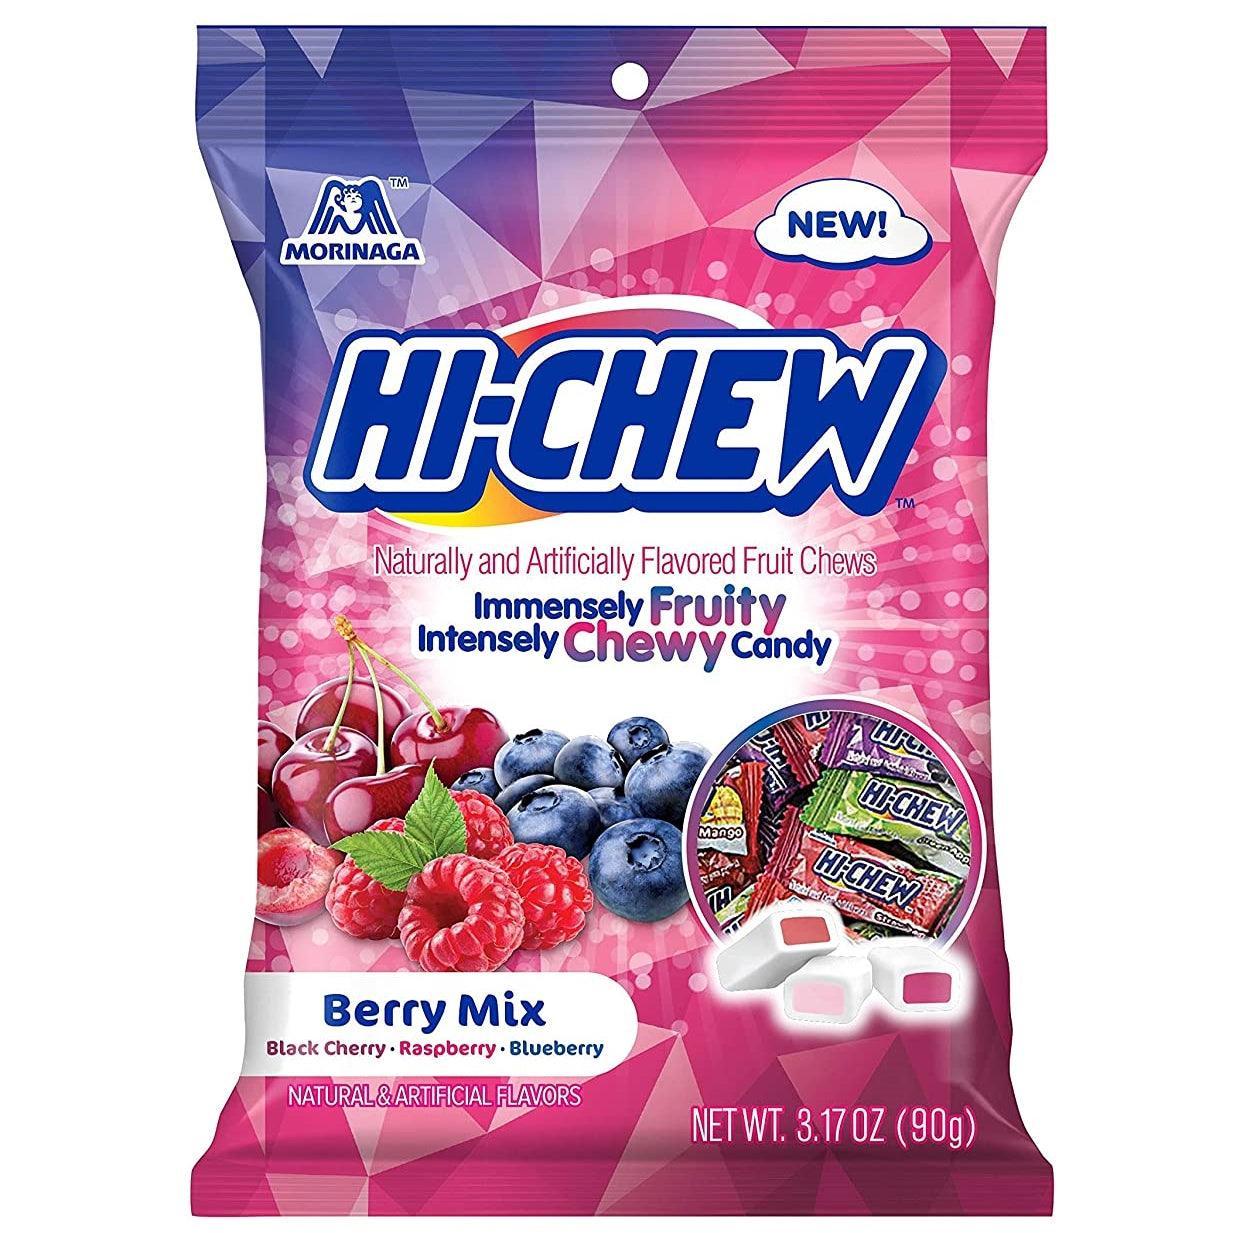 Hi Chew Fruit Candy Bag - Greenwich Village Farm